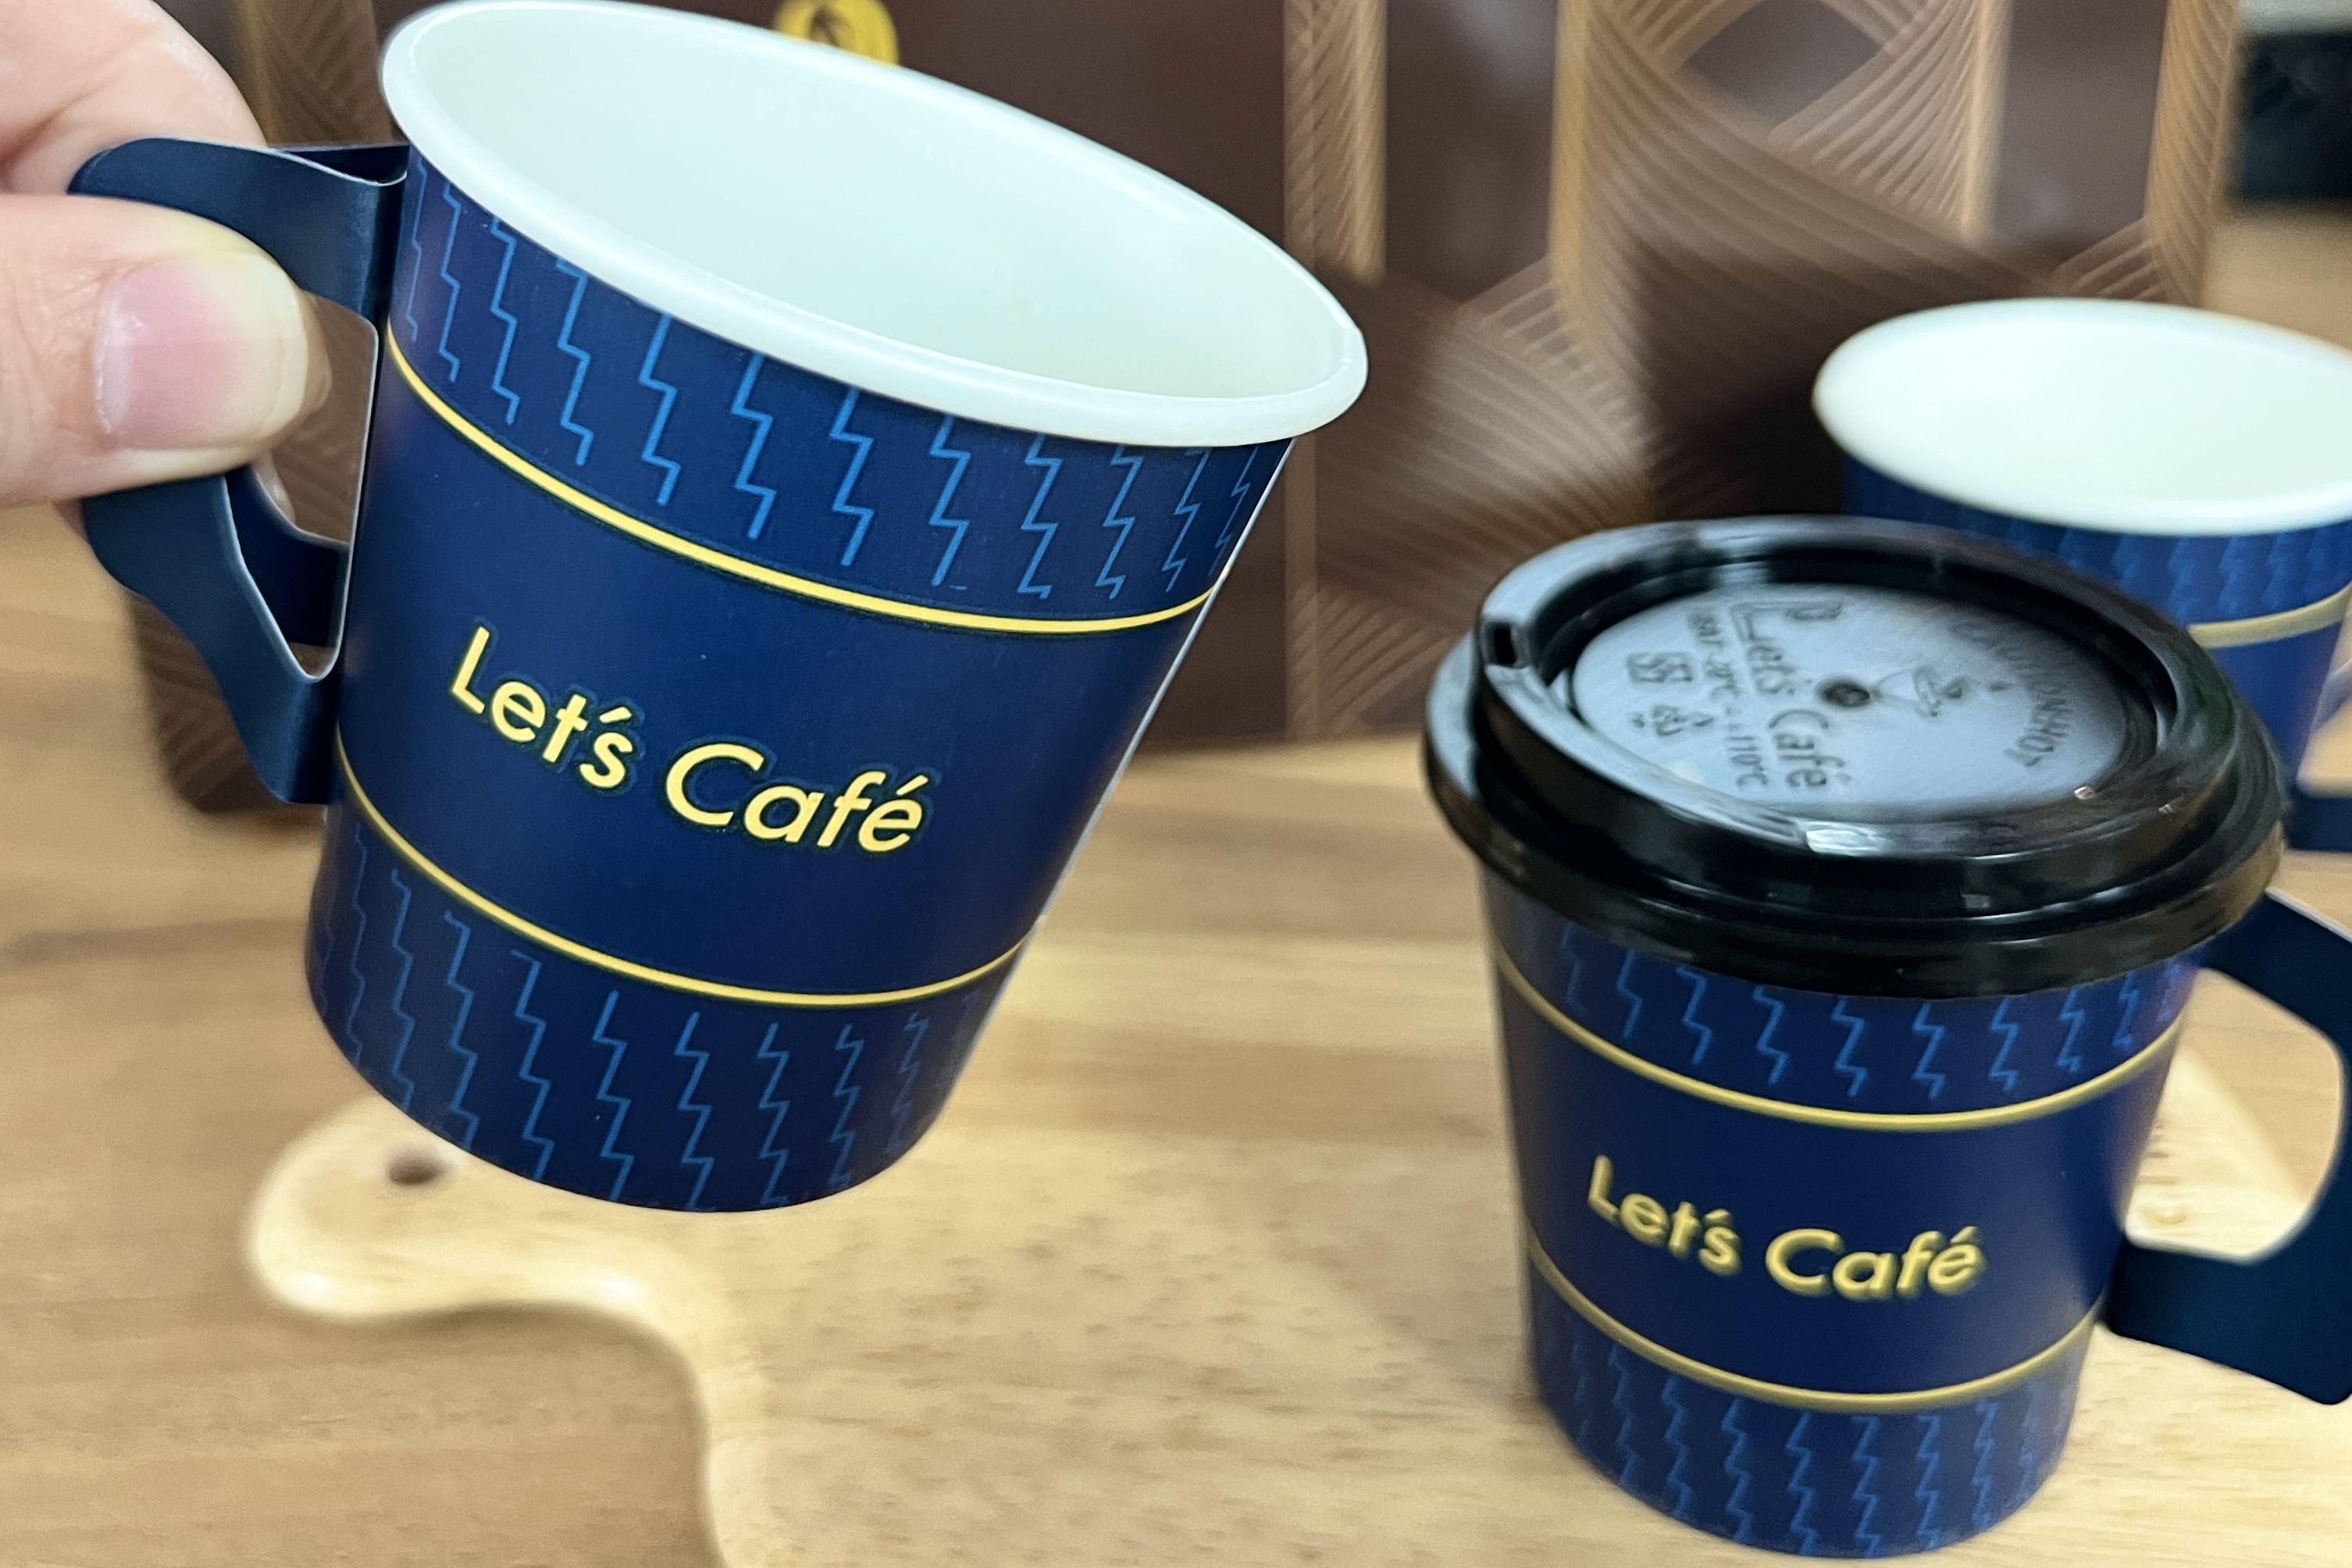 9/23<u>補班日</u>一日限定！全家便利商店「Let’s Café義式濃縮咖啡」10杯168元